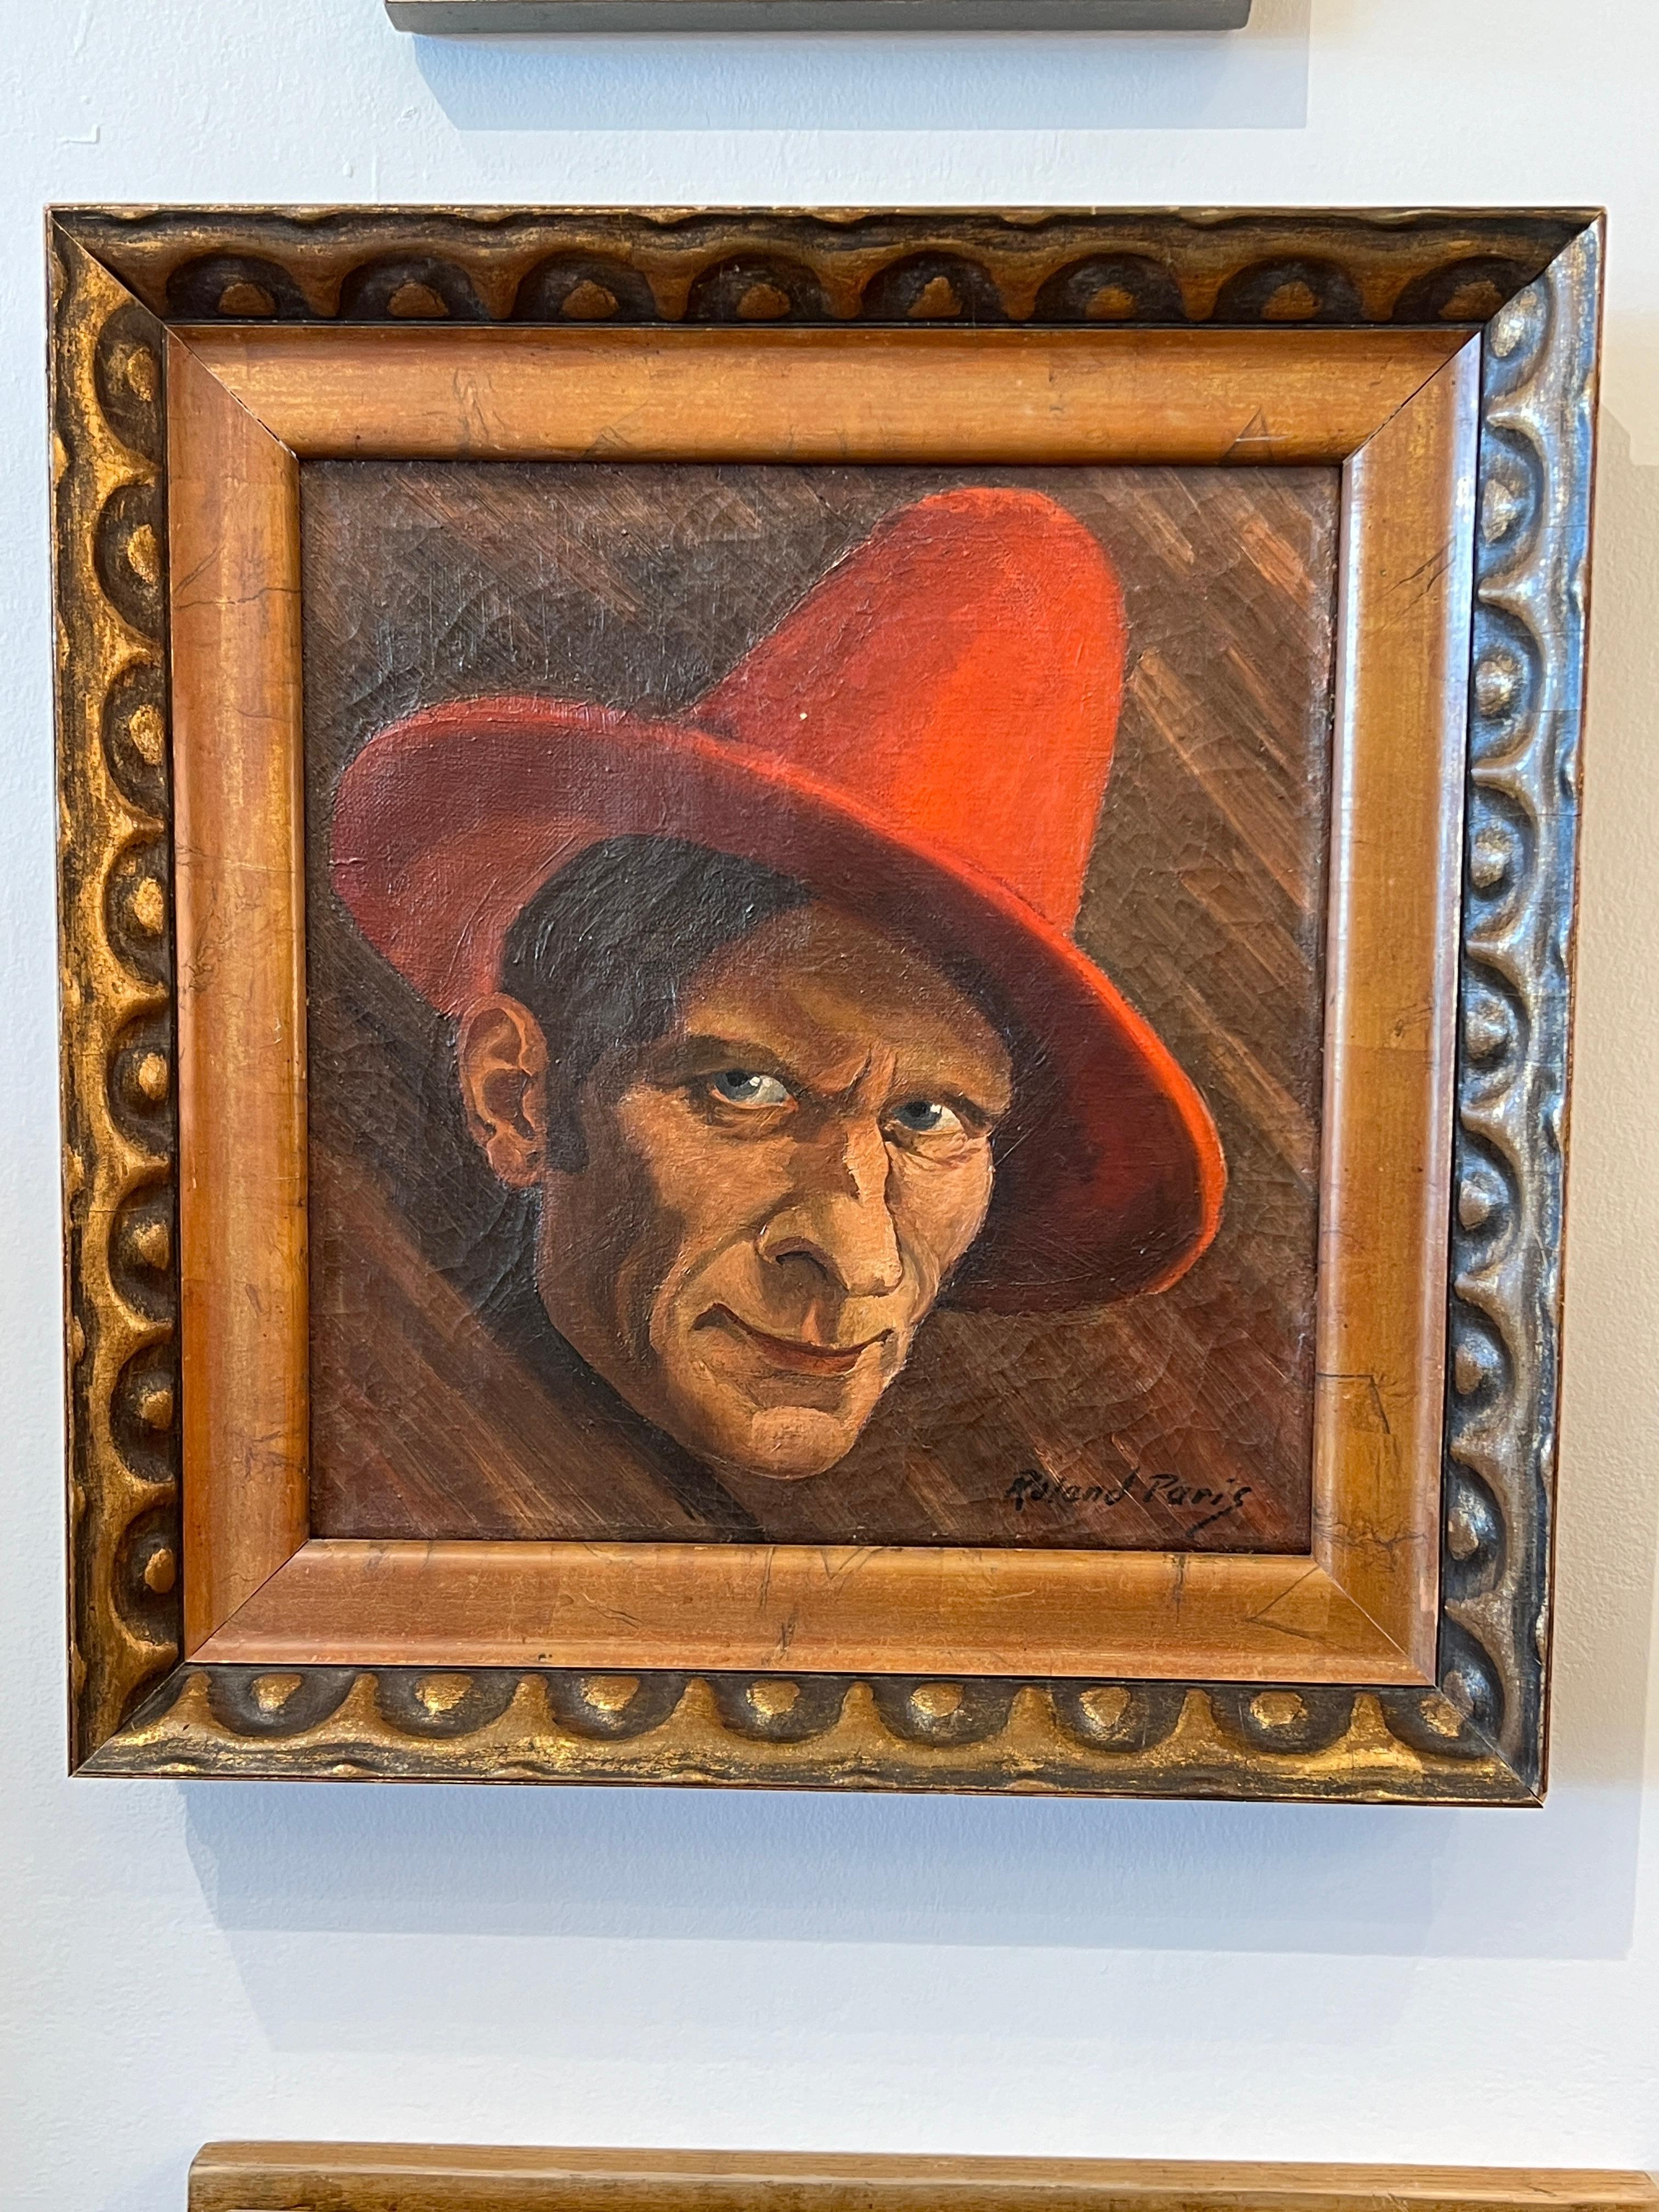 Self-Portrait von Roland Paris mit einem roten Hut.

Unterschrift: Roland Paris